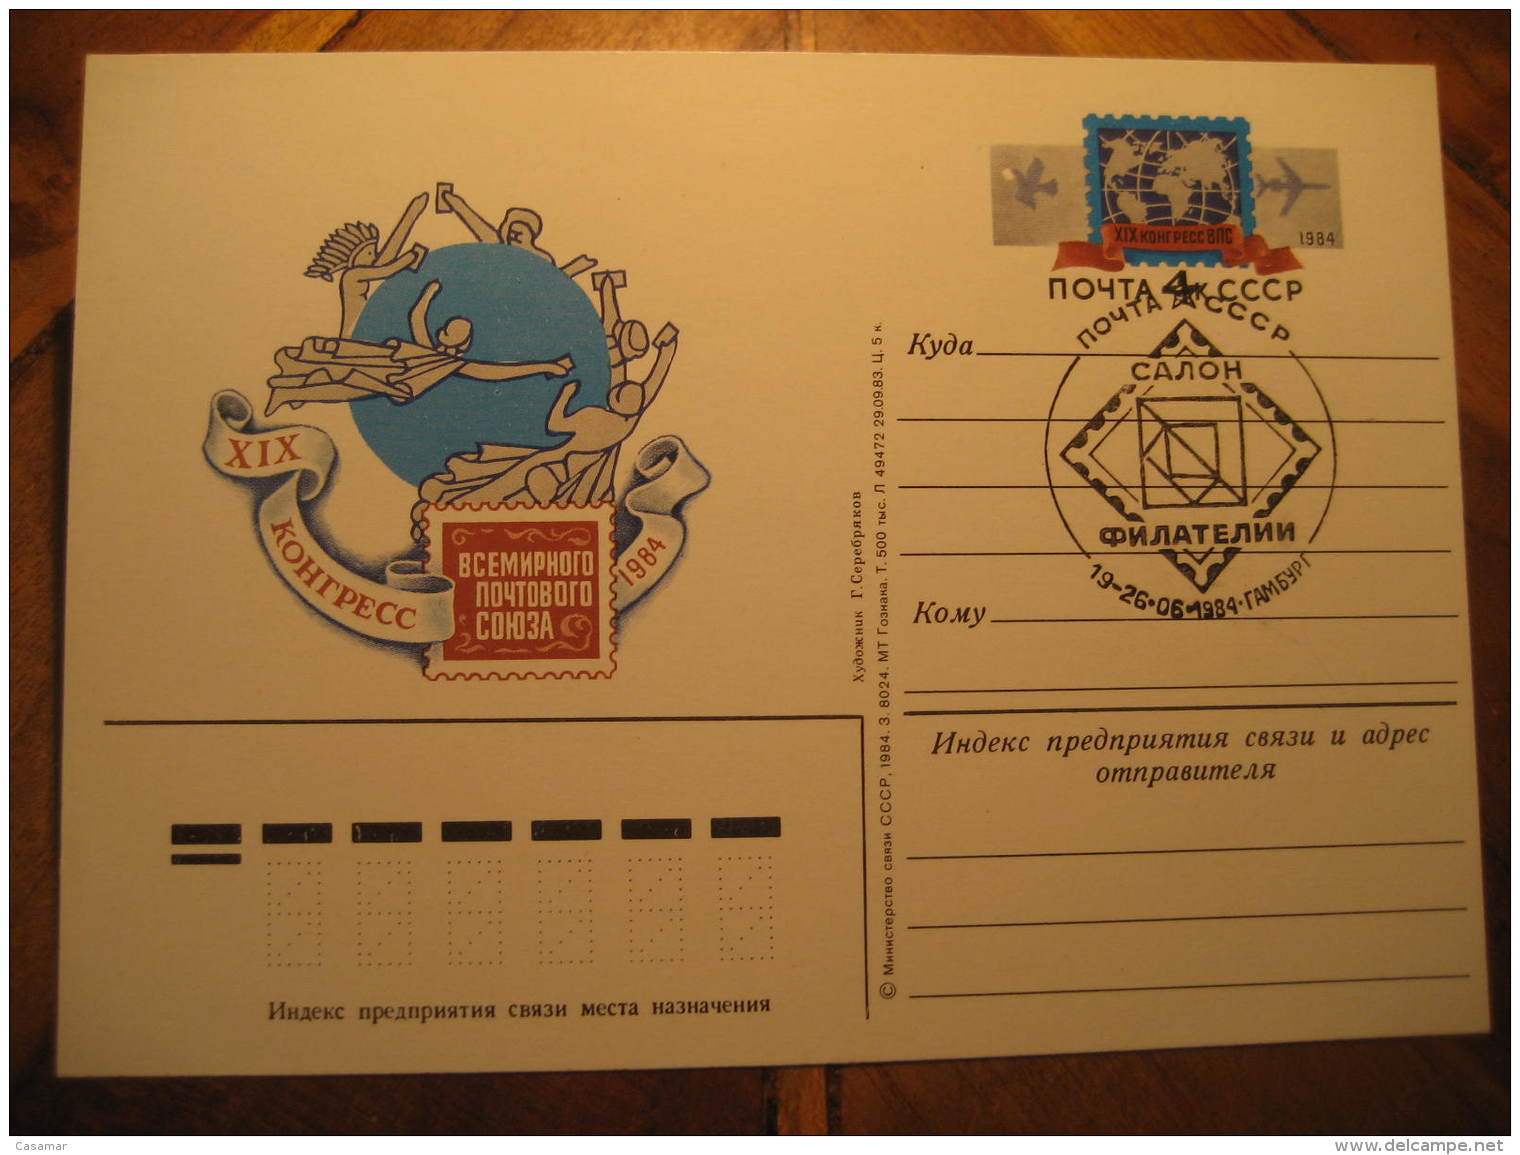 1983 1984 UPU Postal Stationery Card Russia USSR CCCP - UPU (Wereldpostunie)